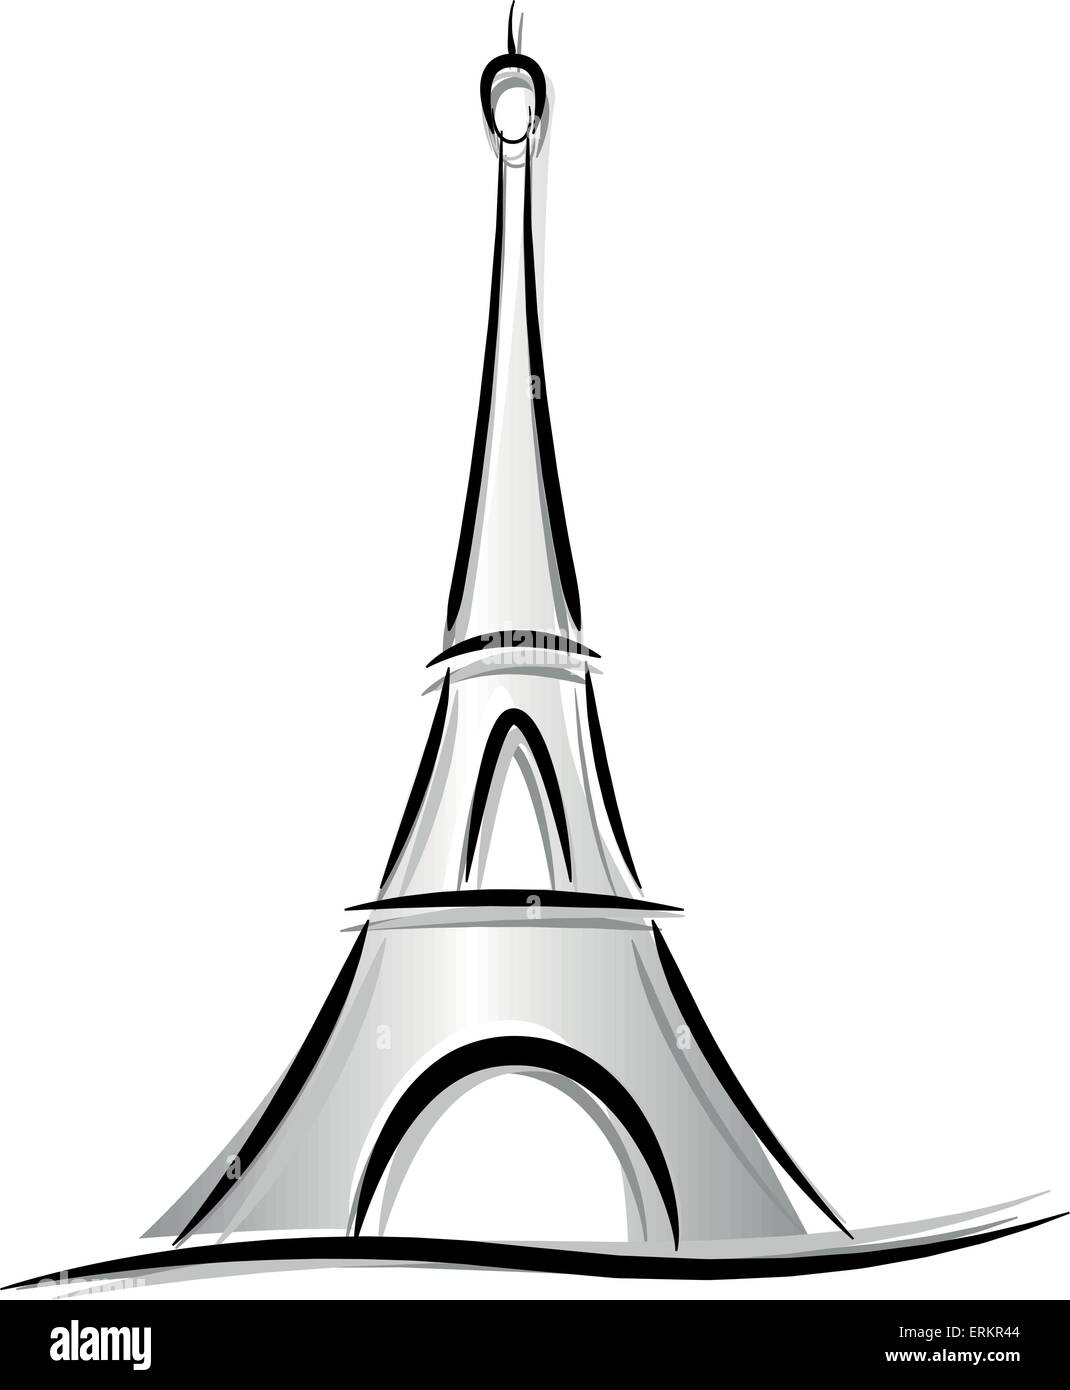 image de la tour eiffel en dessin